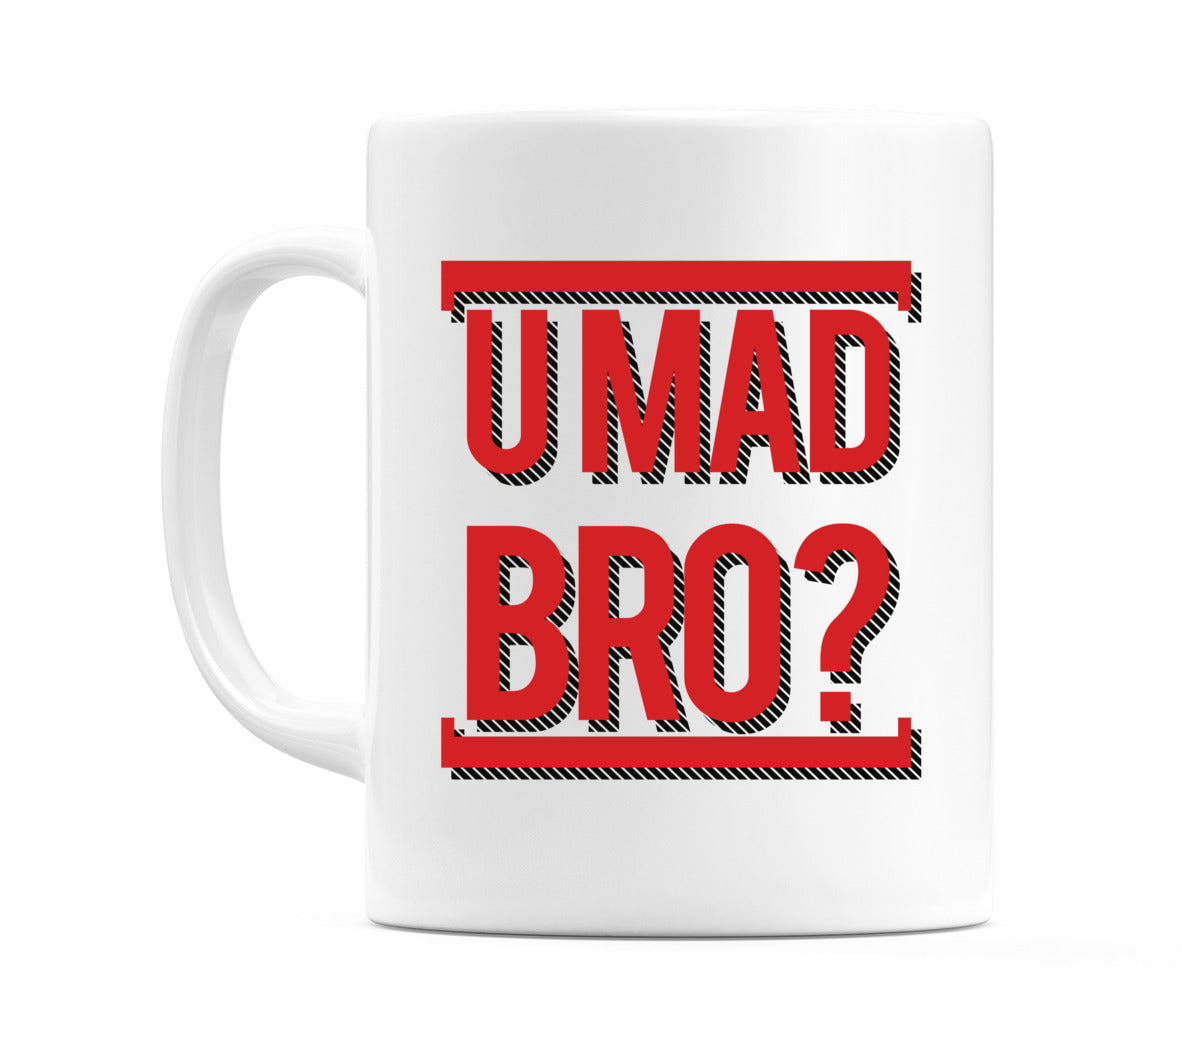 Umad Bro? Mug